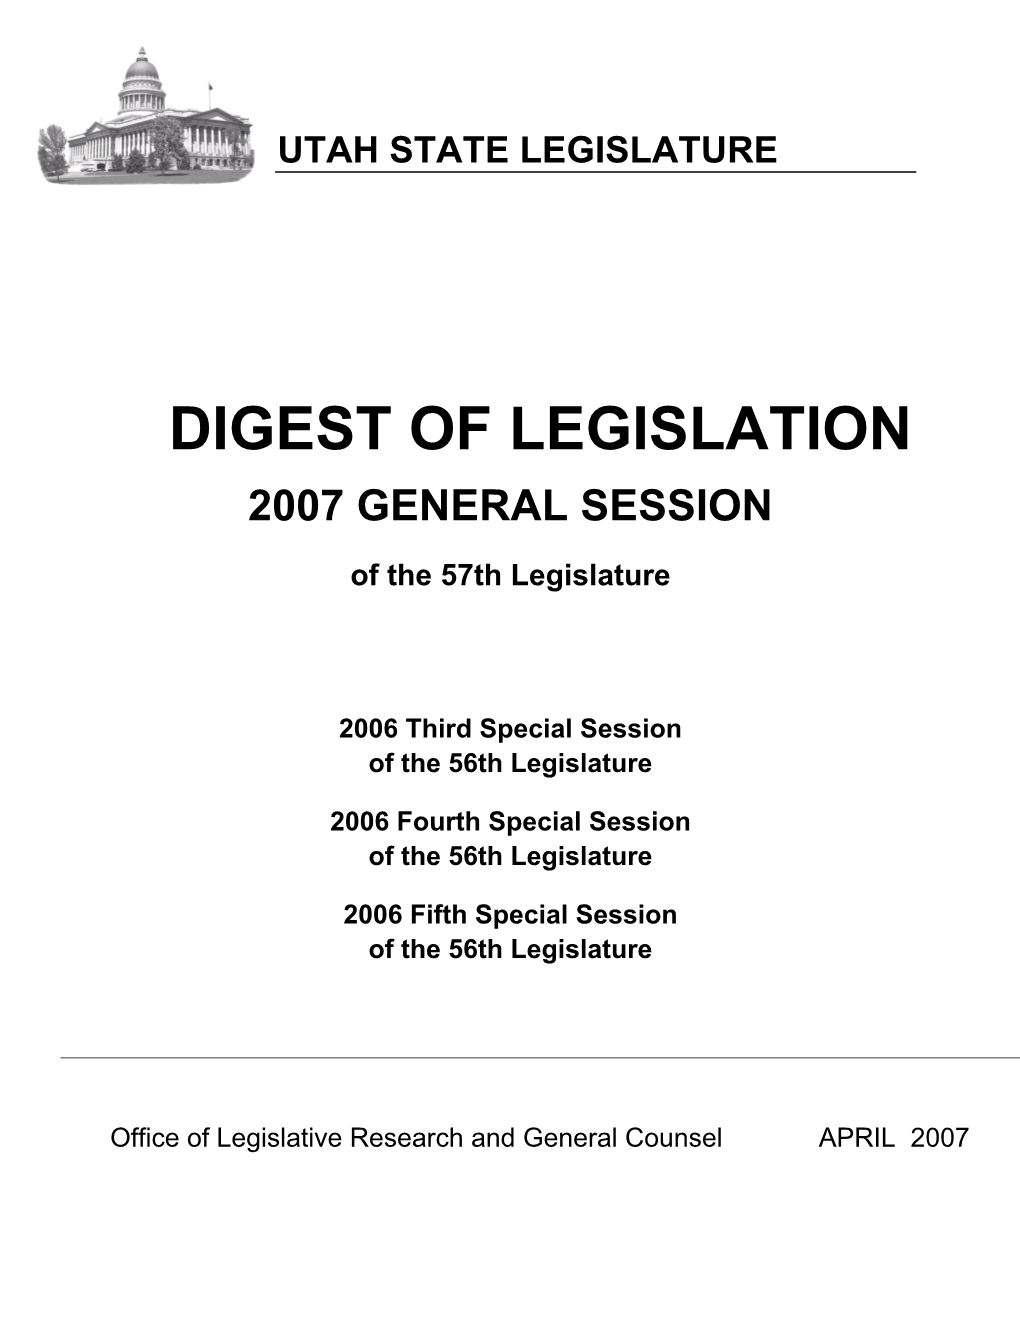 Digest of Legislation 2007 General Session